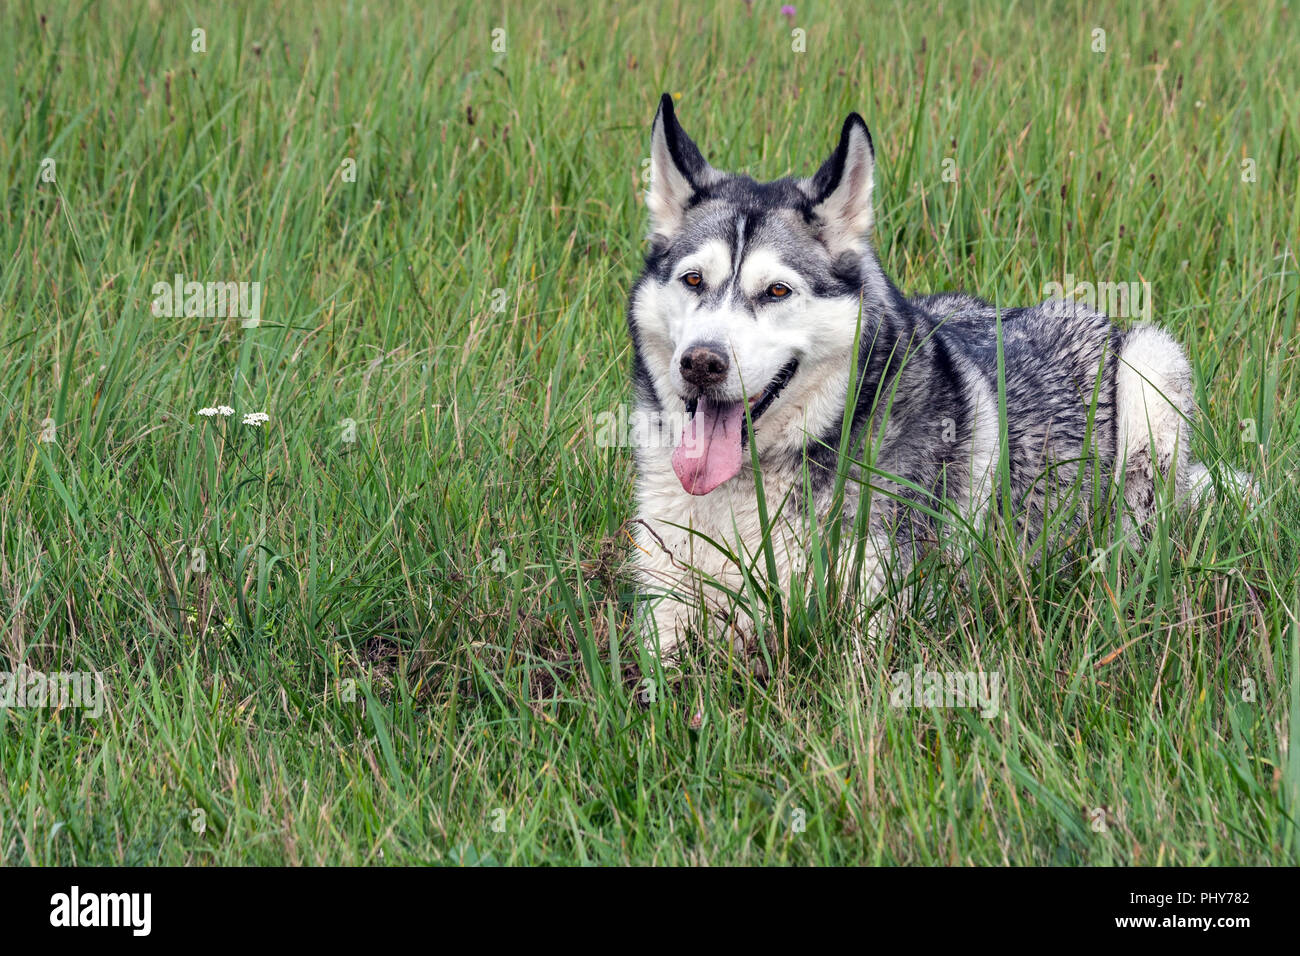 Der Hund ist ein Alaskan Malamute, Portrait, liegt auf einer hohen grünen Gras, ein schmutziges Gesicht, die Nase ist im Boden verschmutzt, ein schmutziges Zunge zu sehen ist, Stockfoto